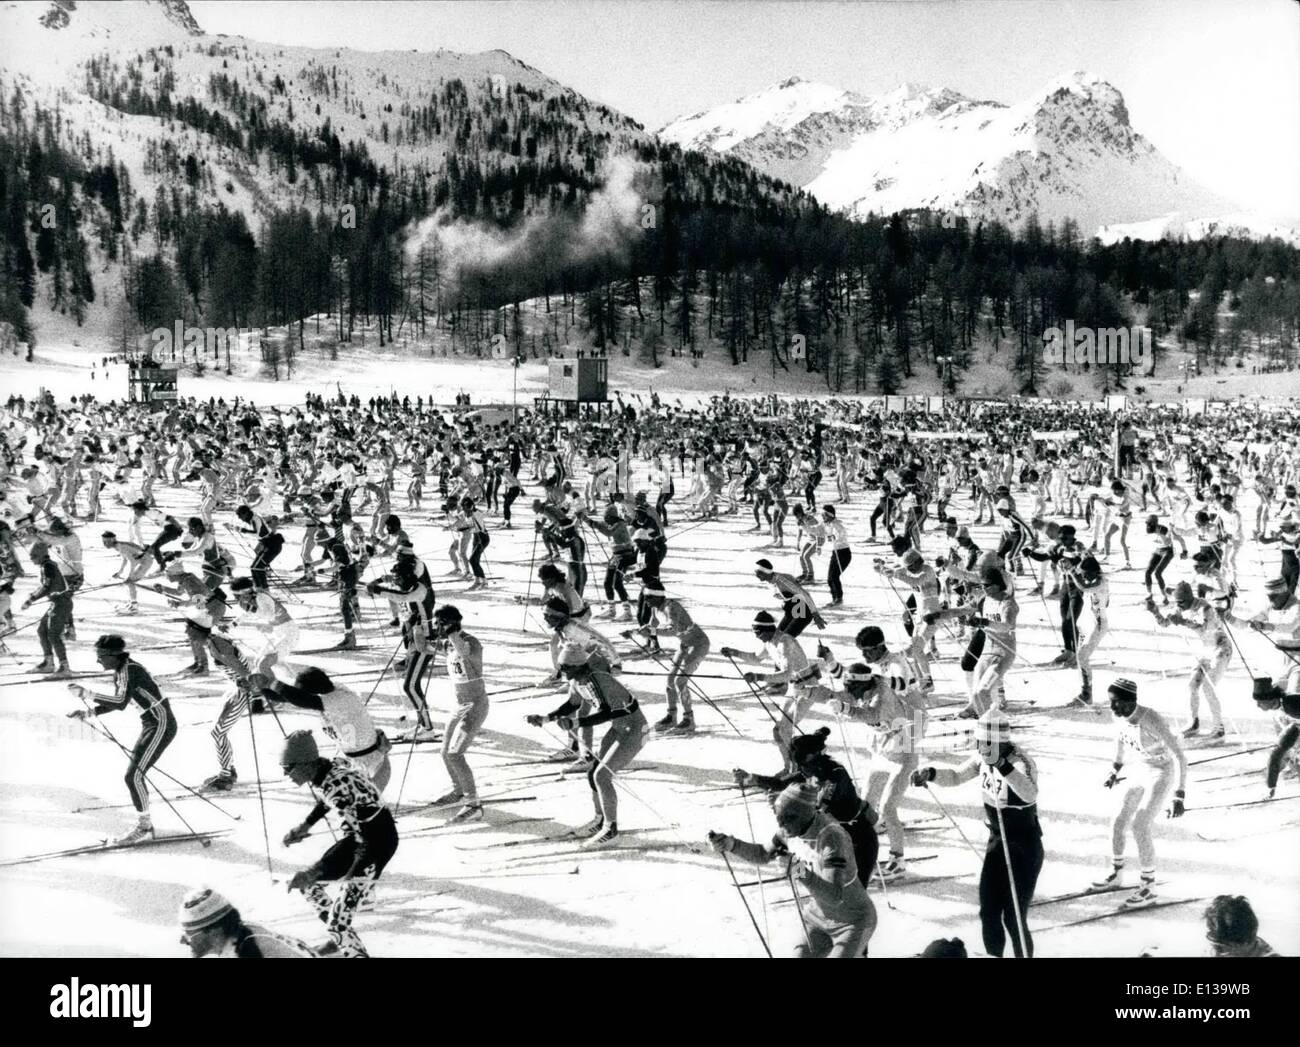 Febbraio 29, 2012 - 11.000 a praticare lo sci di fondo. Al ventiduesimo Engadin Ski-Marathon per amatori del Cantone dei Grigioni hanno partecipato circa 11.000 guide. La nostra immagine mostra la folla sulla strada. Keystone Premere Zurigo 12.3.90 Foto Stock